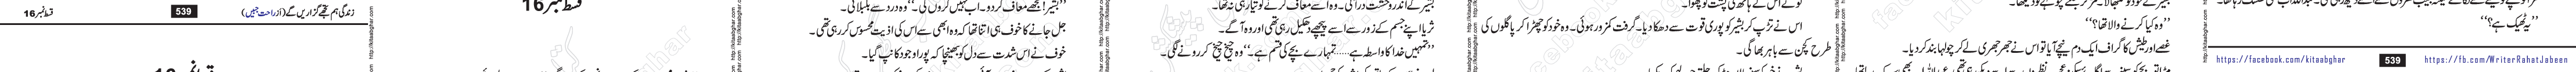 Zindagi Hum Tujhe Guzaren Ge last episode 17 & 18 Urdu Novel by Rahat Jabeen